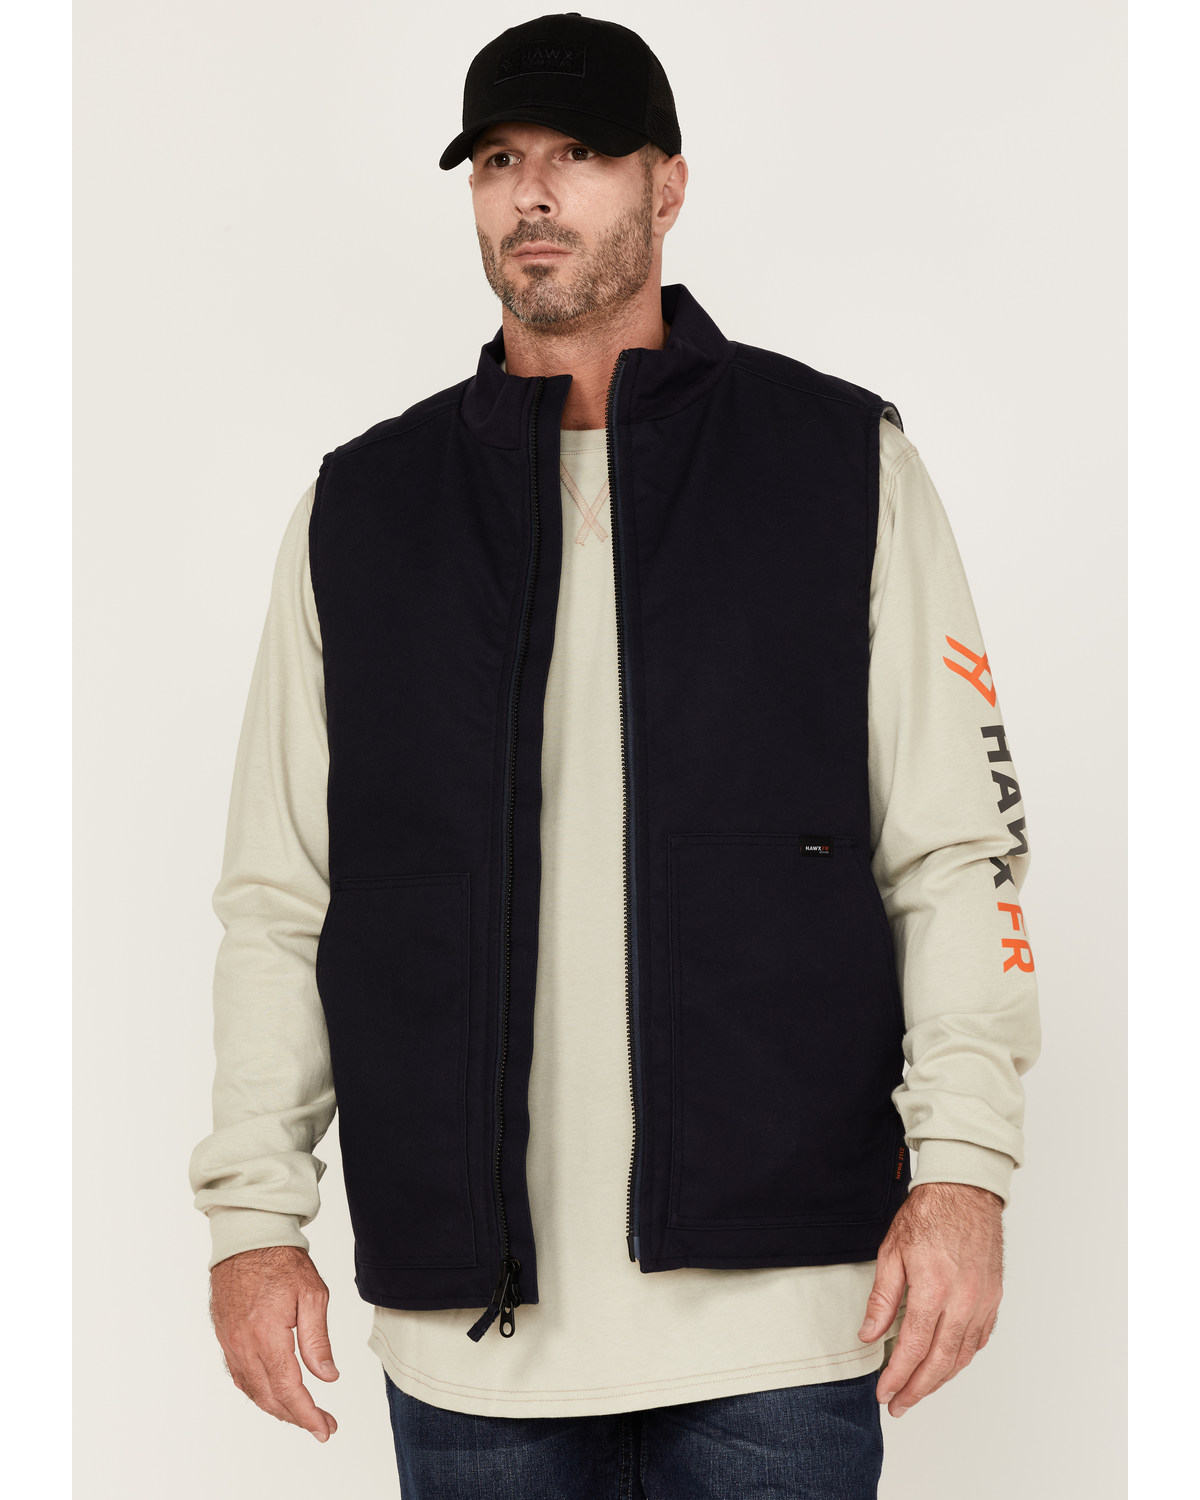 Hawx Men's FR Solid Zip-Front Insulated Work Vest